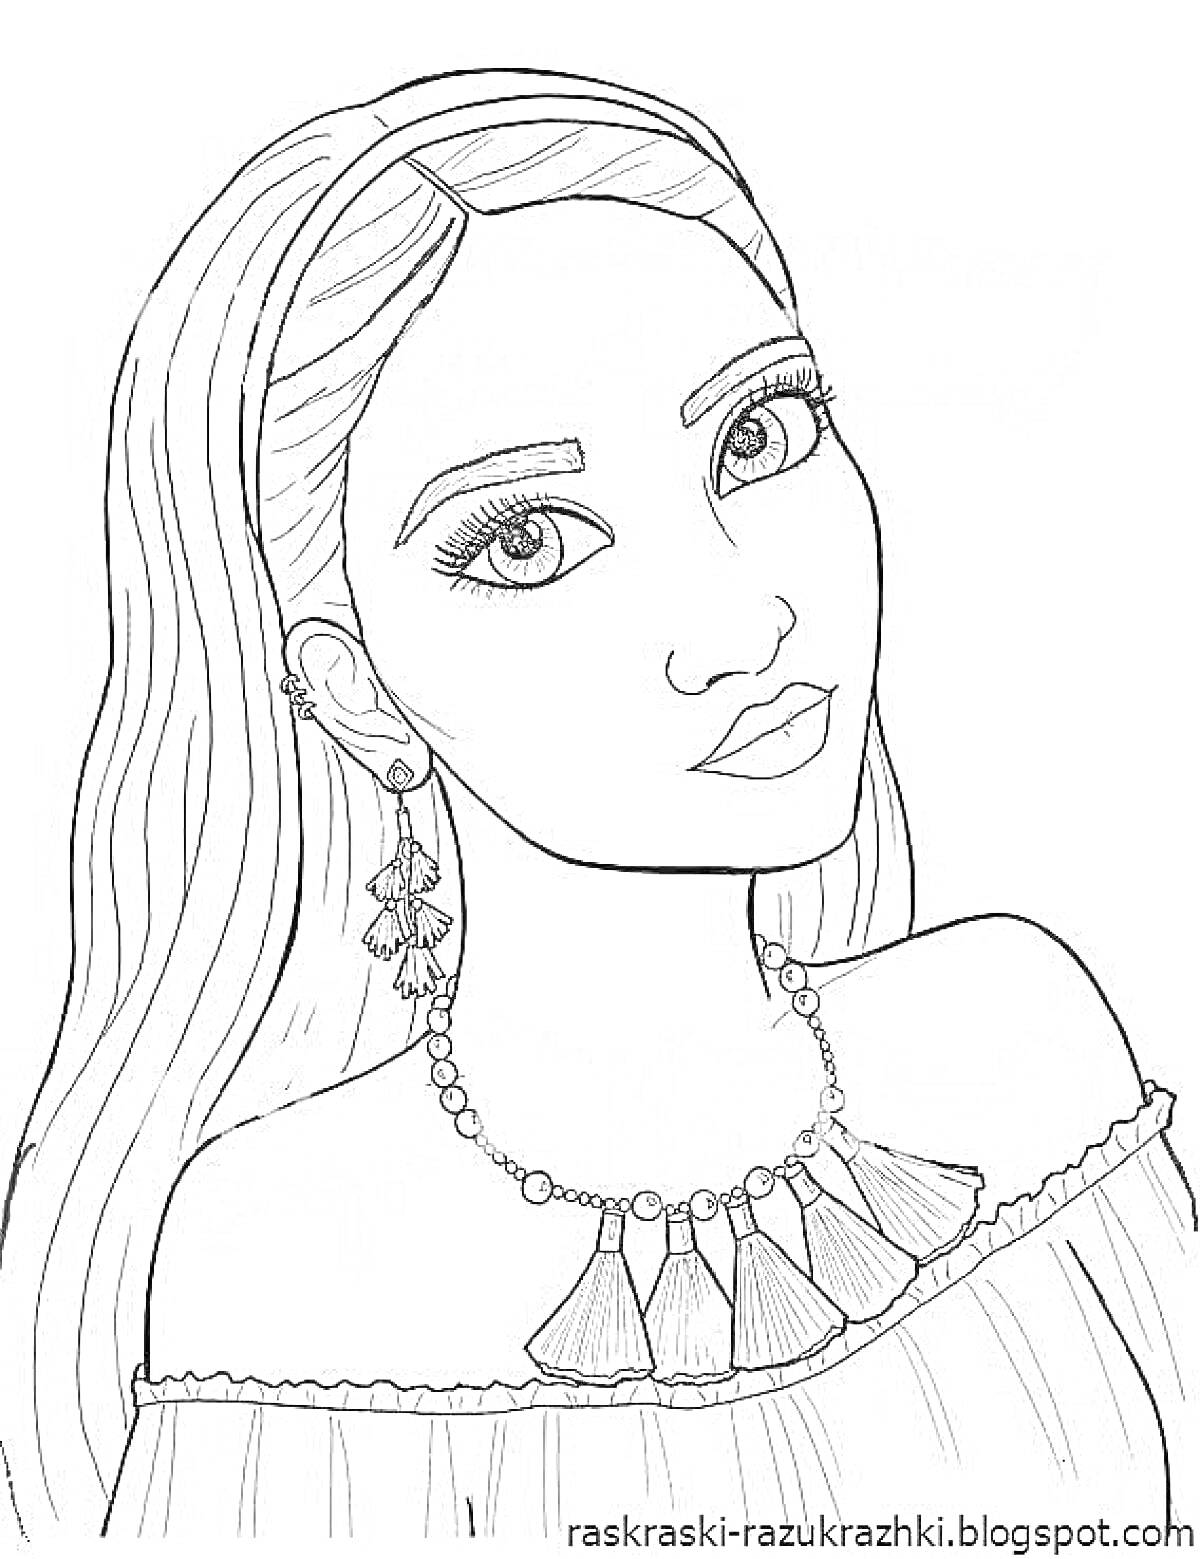 Раскраска Девочка с длинными волосами в серьгах, ожерелье на шее, платье с открытыми плечами